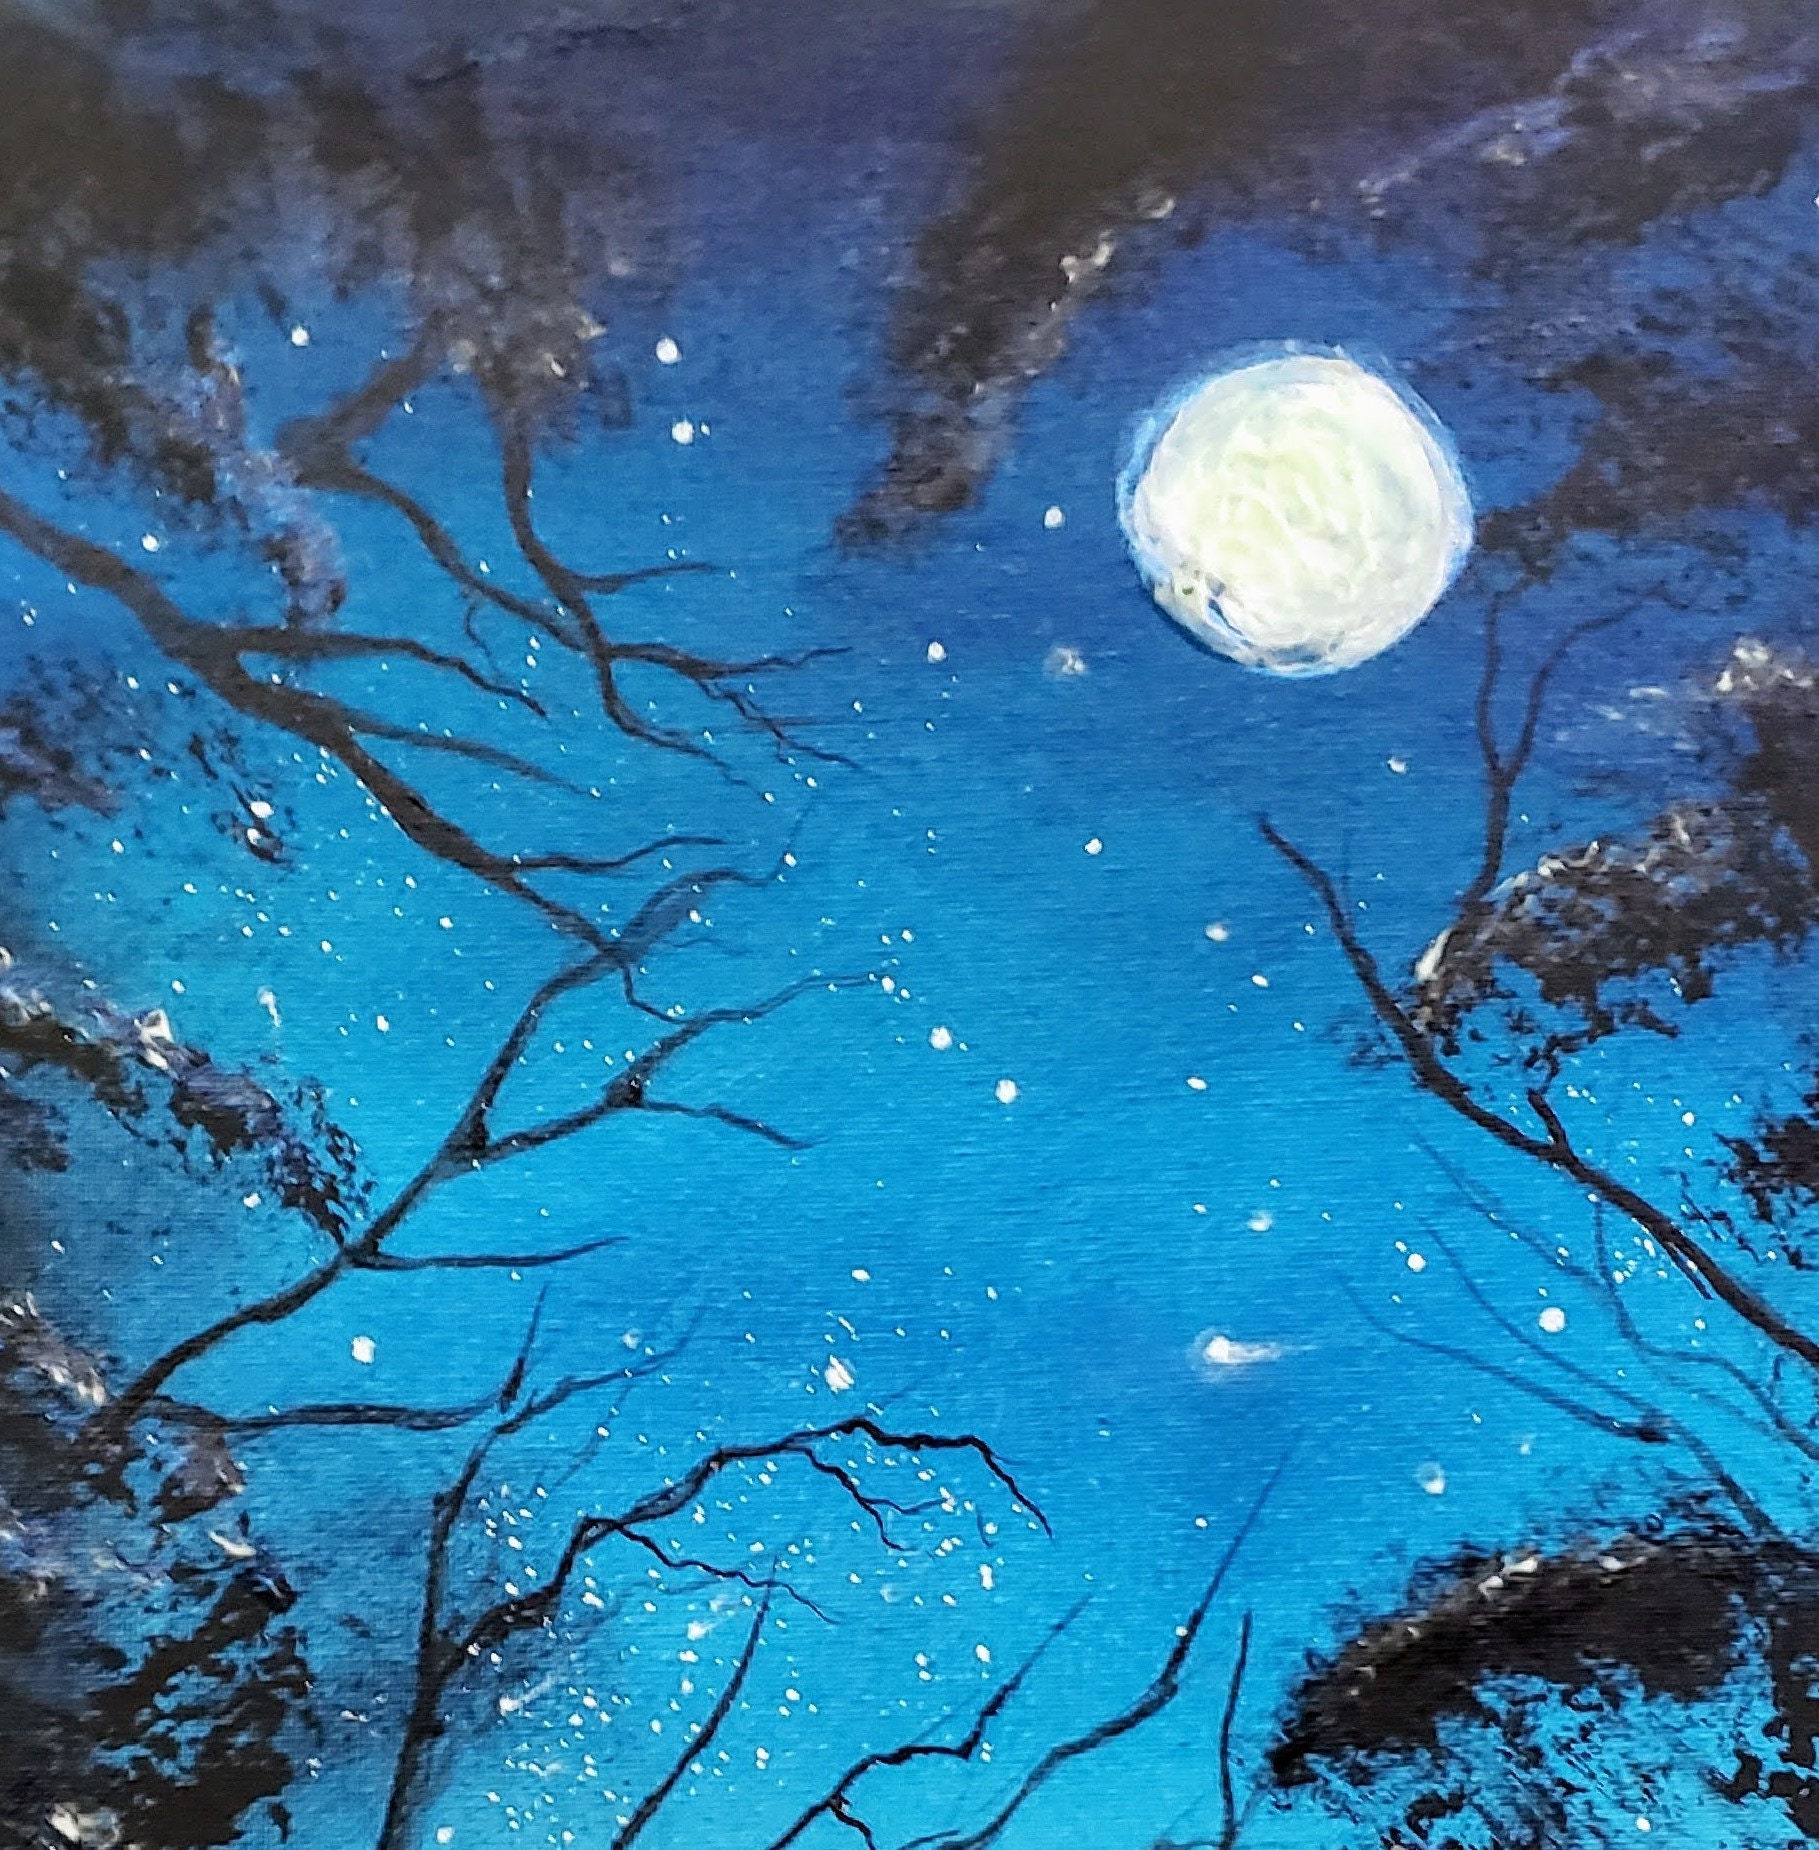 8 X 10 Full Moon in Spooky Forest Print Blue Moon Art Spooky | Etsy